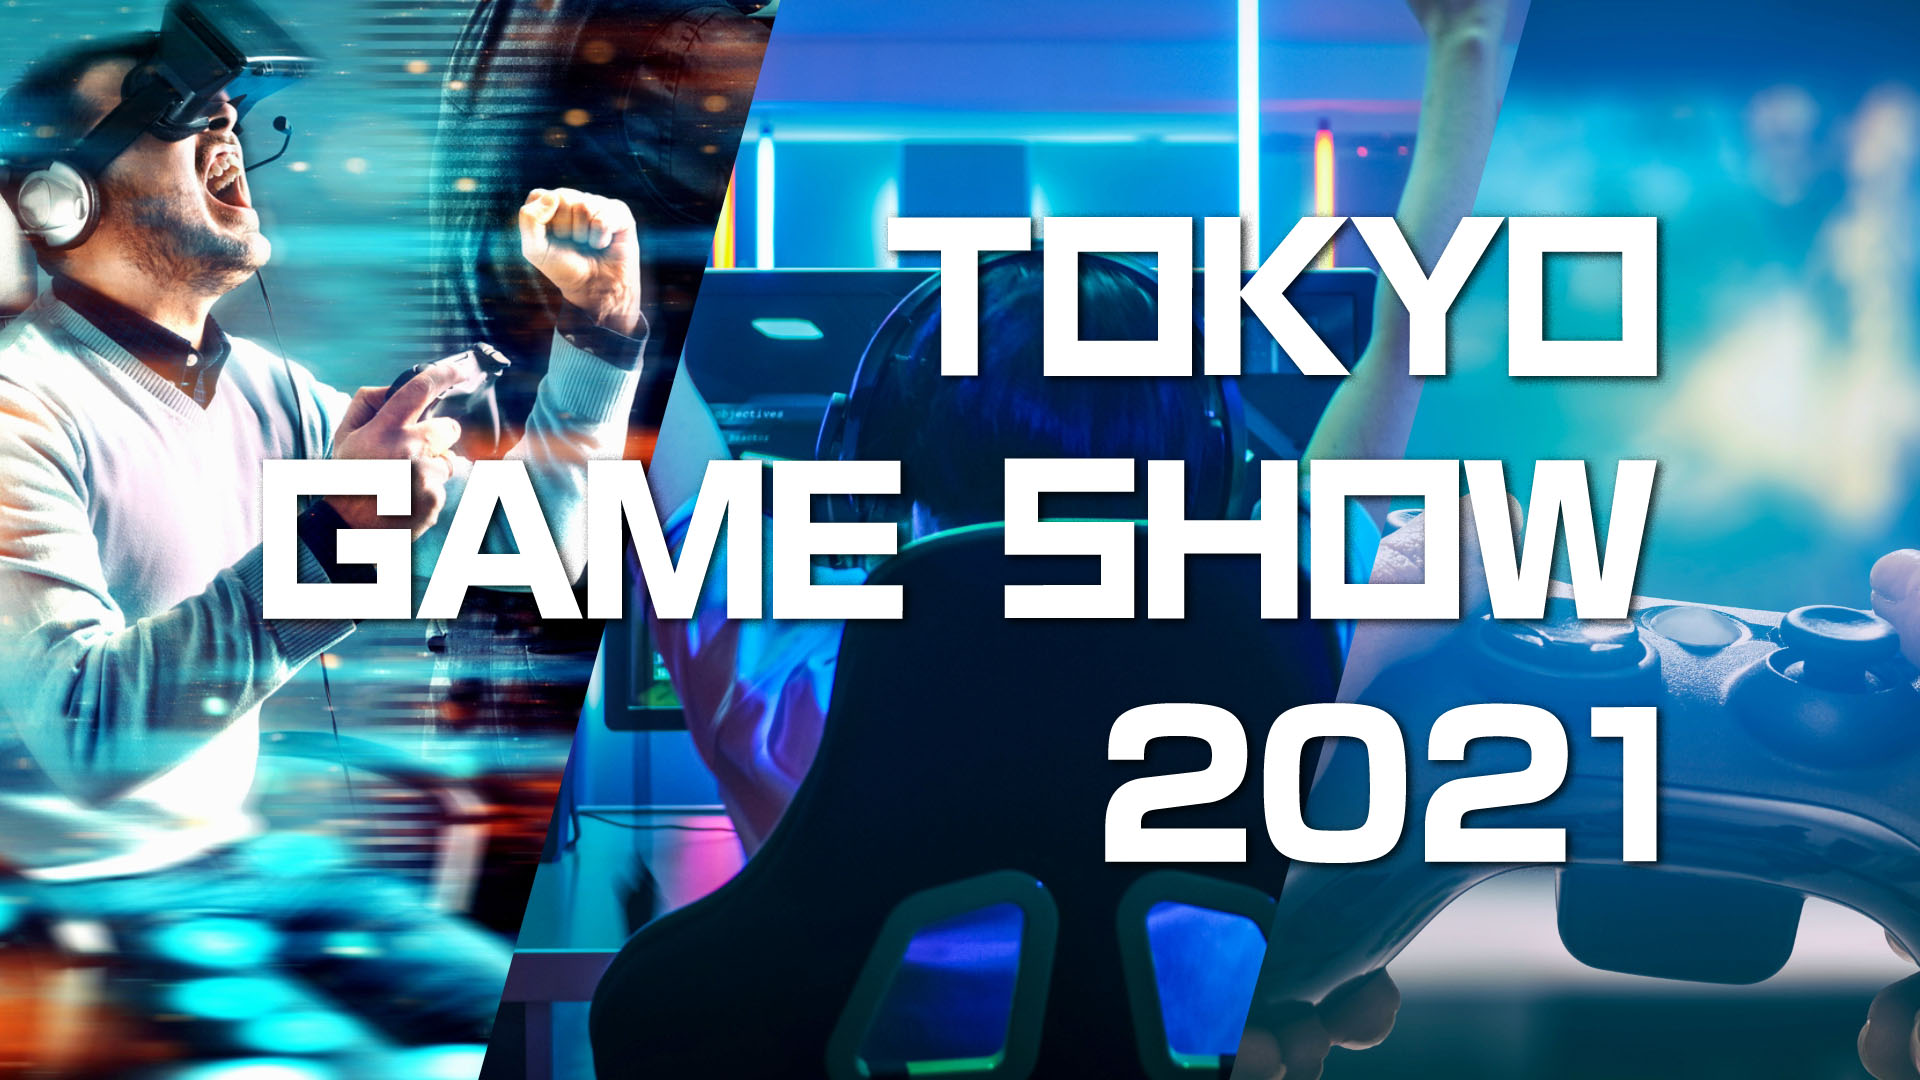 Токио Гаме Схов је поново само онлајн за 2021